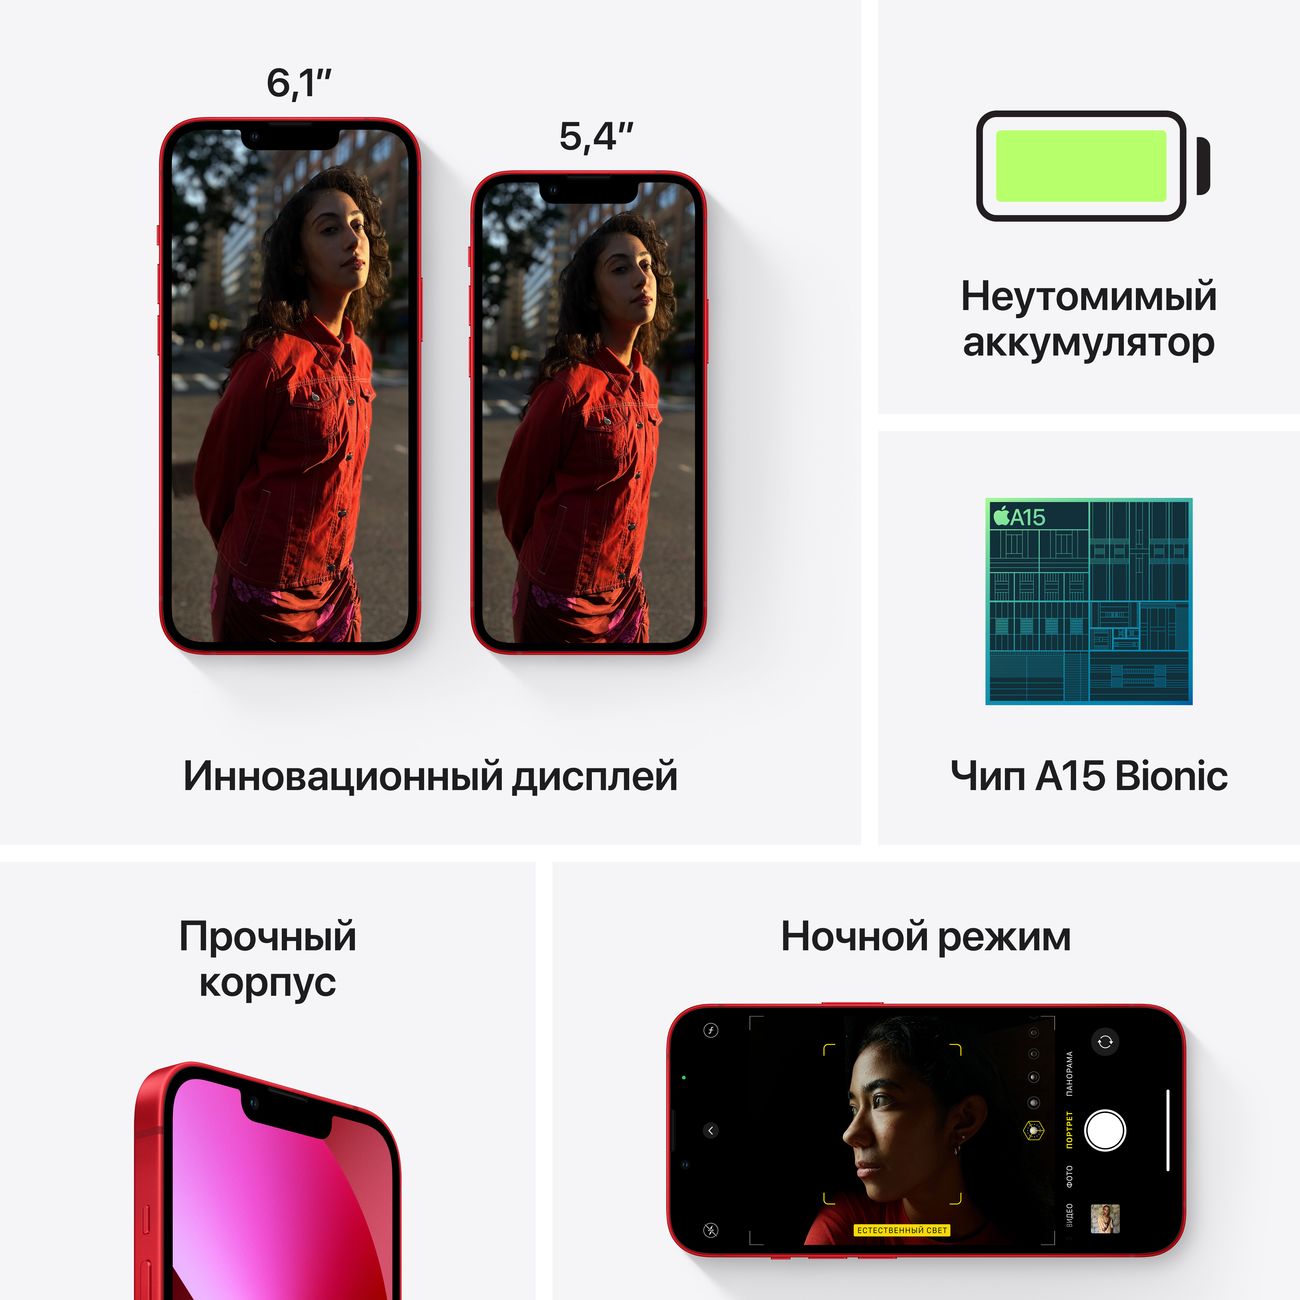 Купить Смартфон Apple iPhone 13 mini 128GB Pink 69 990 руб. Apple iPhone 13  mini в официальном магазине Apple, Samsung, Xiaomi. iPixel.ru смартфон  apple iphone 13 mini 128gb pink в городе. доставка,